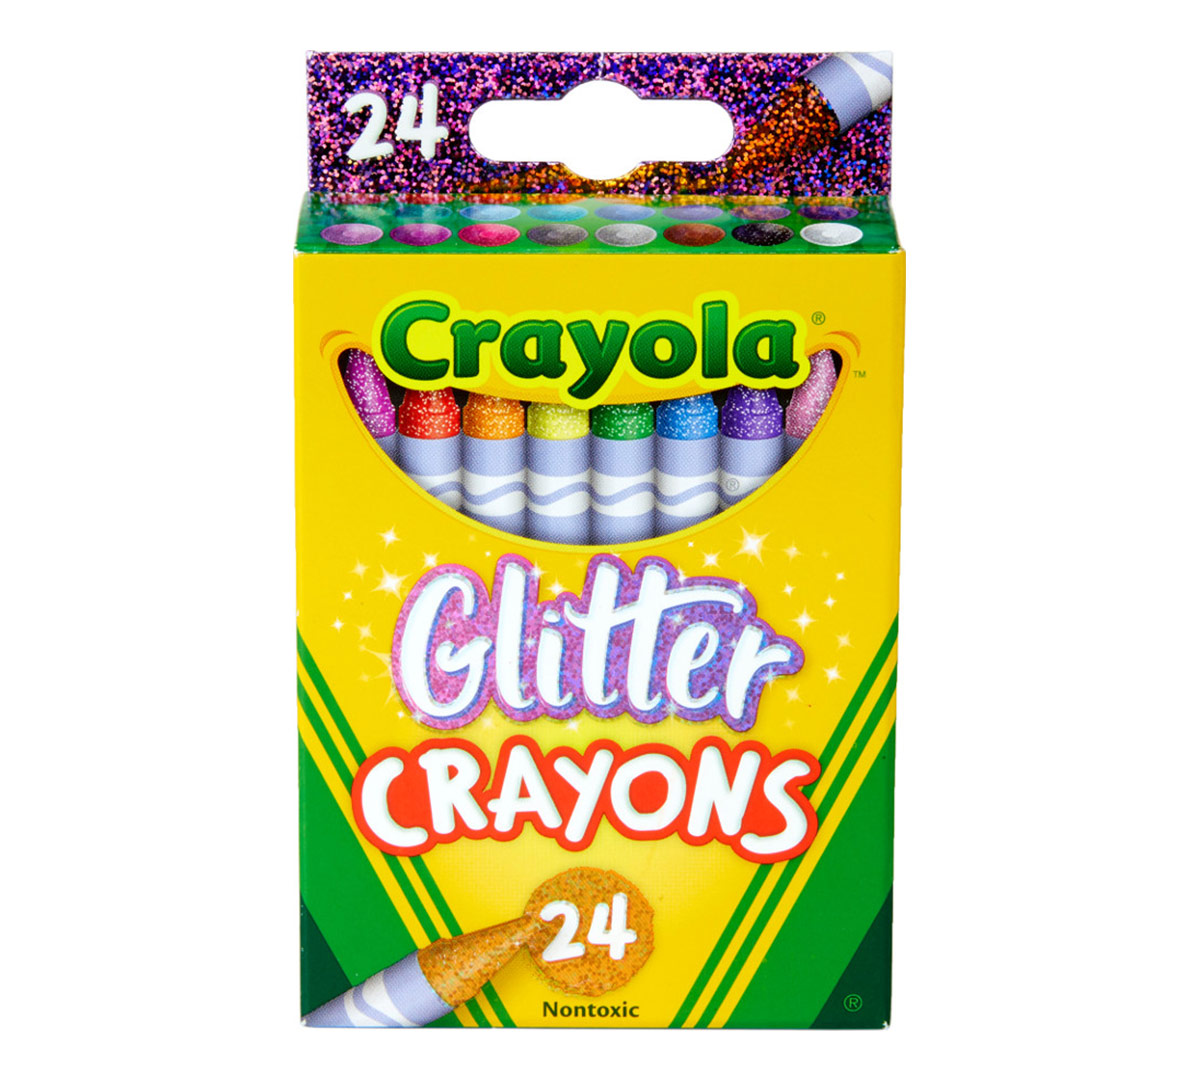 Download Glitter Crayons, 24 Count Crayola Crayons | Crayola.com ...